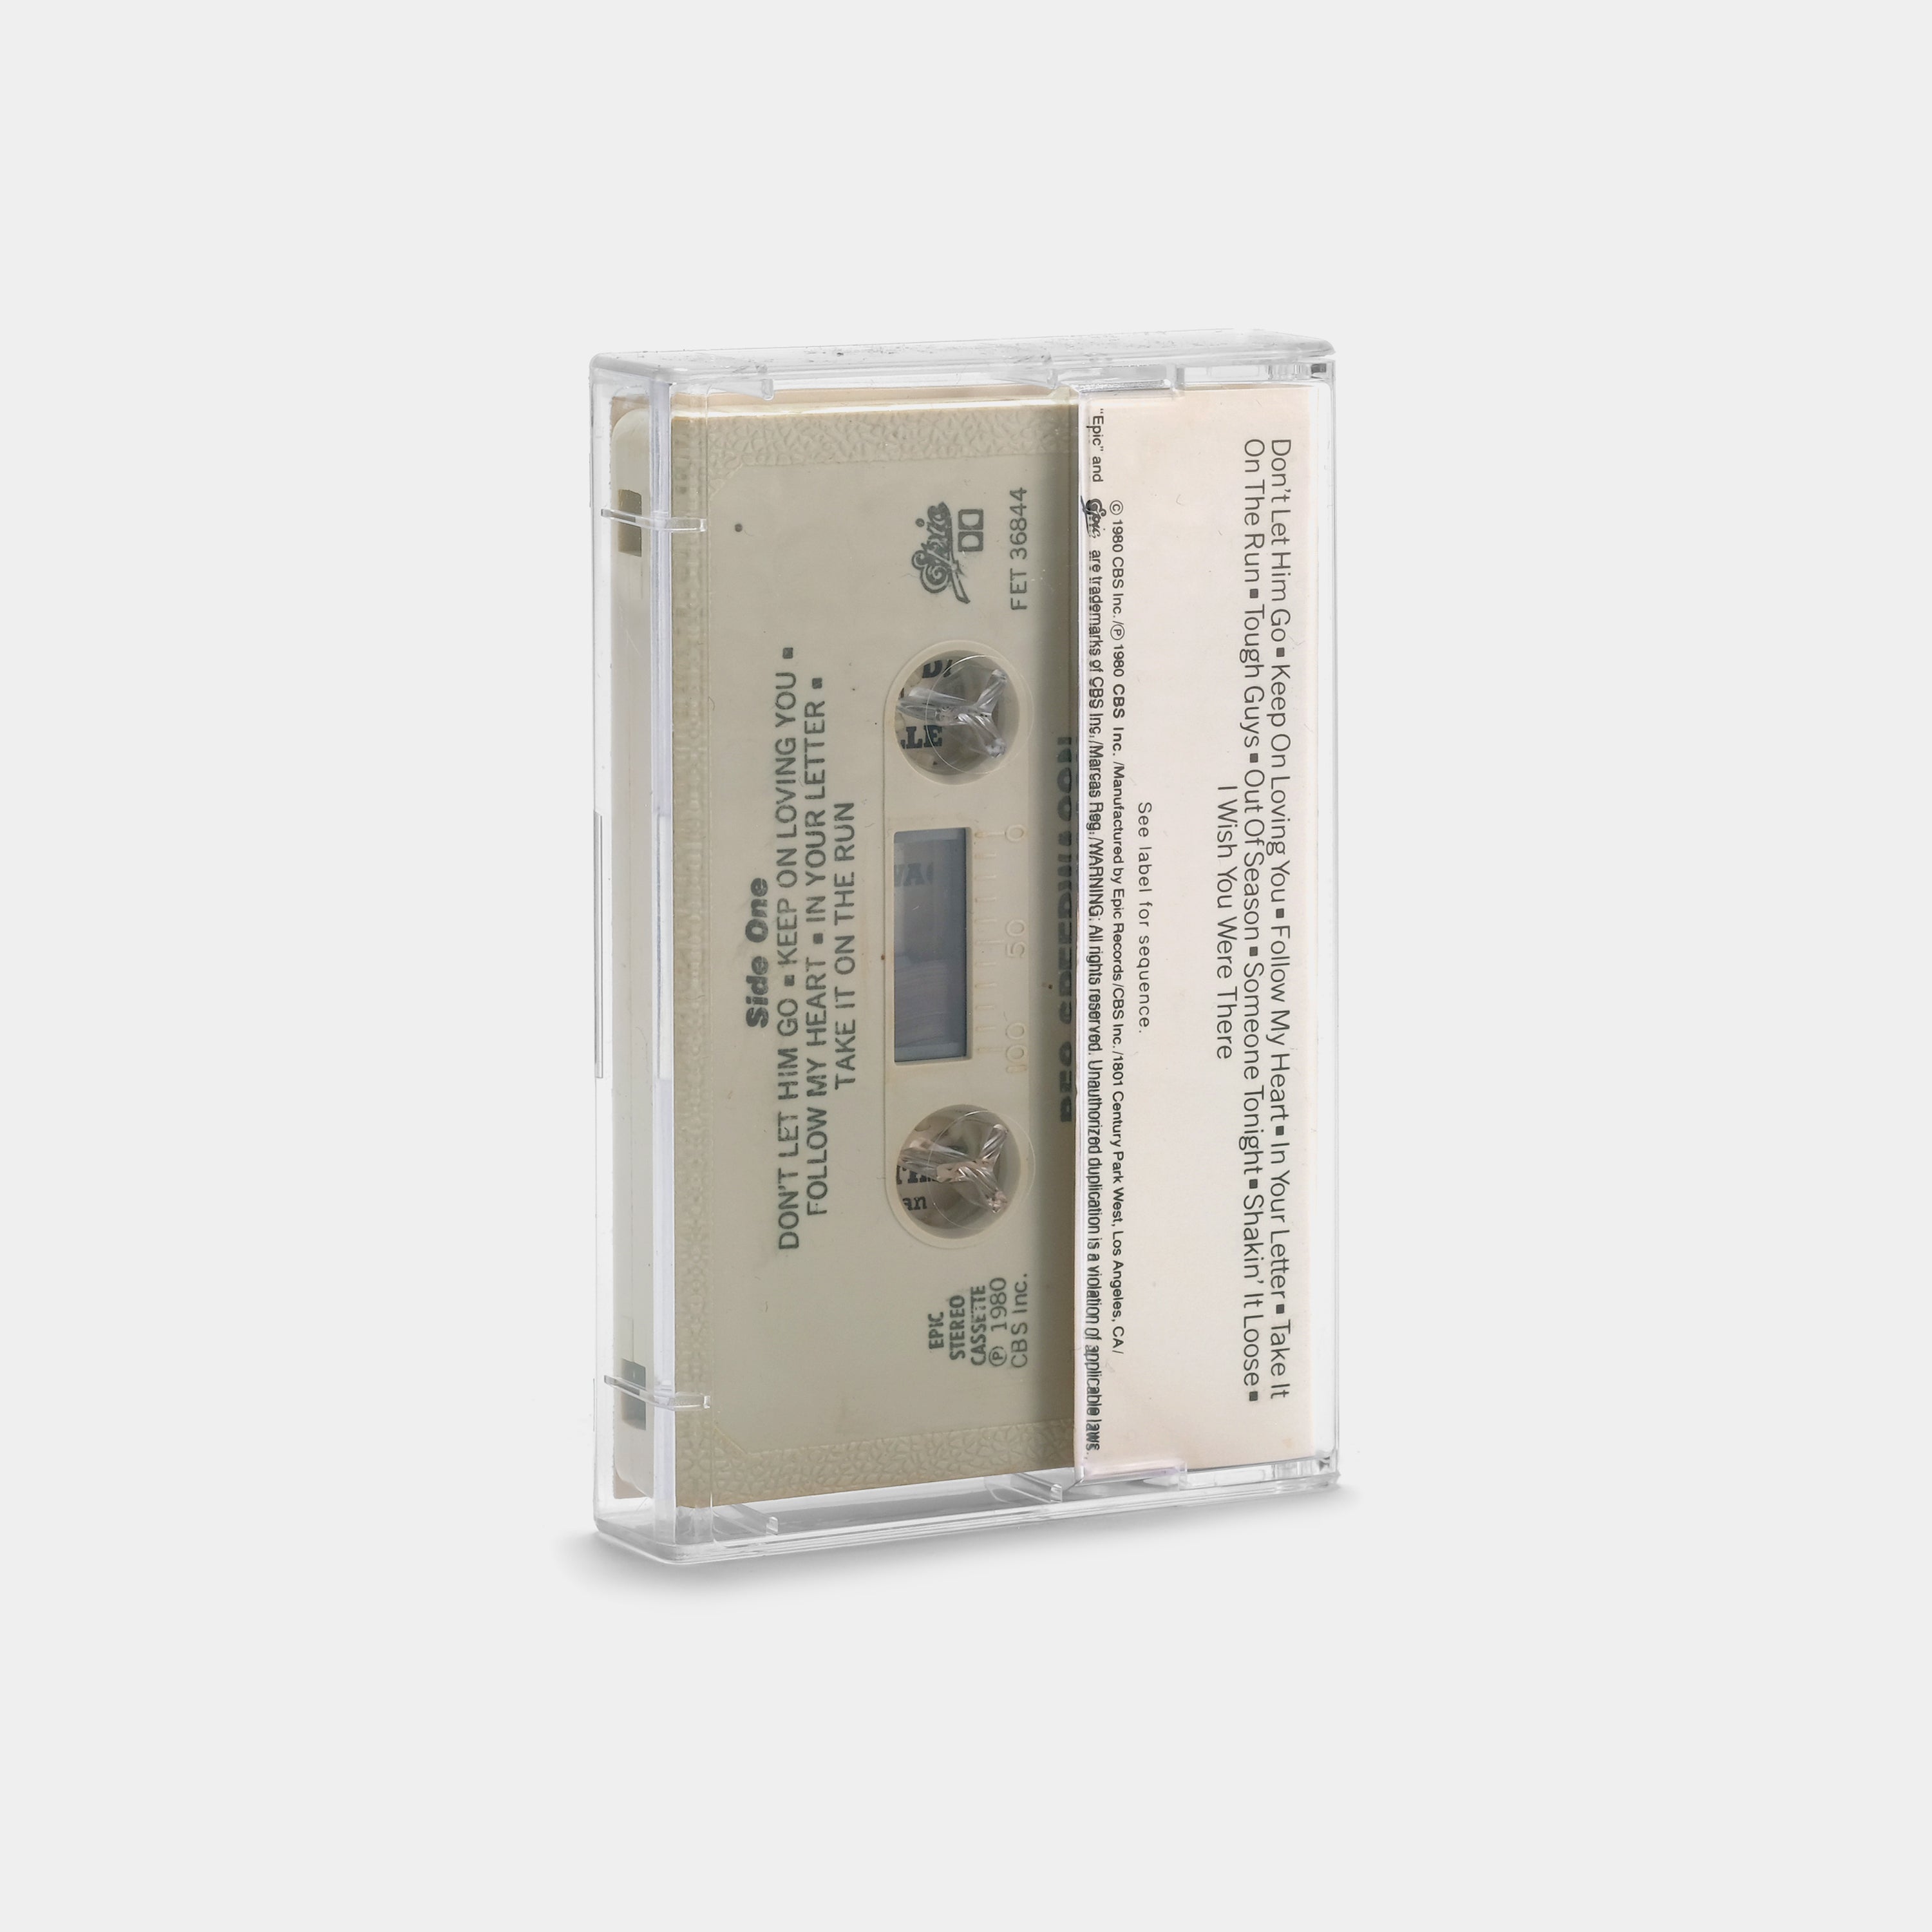 REO Speedwagon - Hi Infidelity Cassette Tape